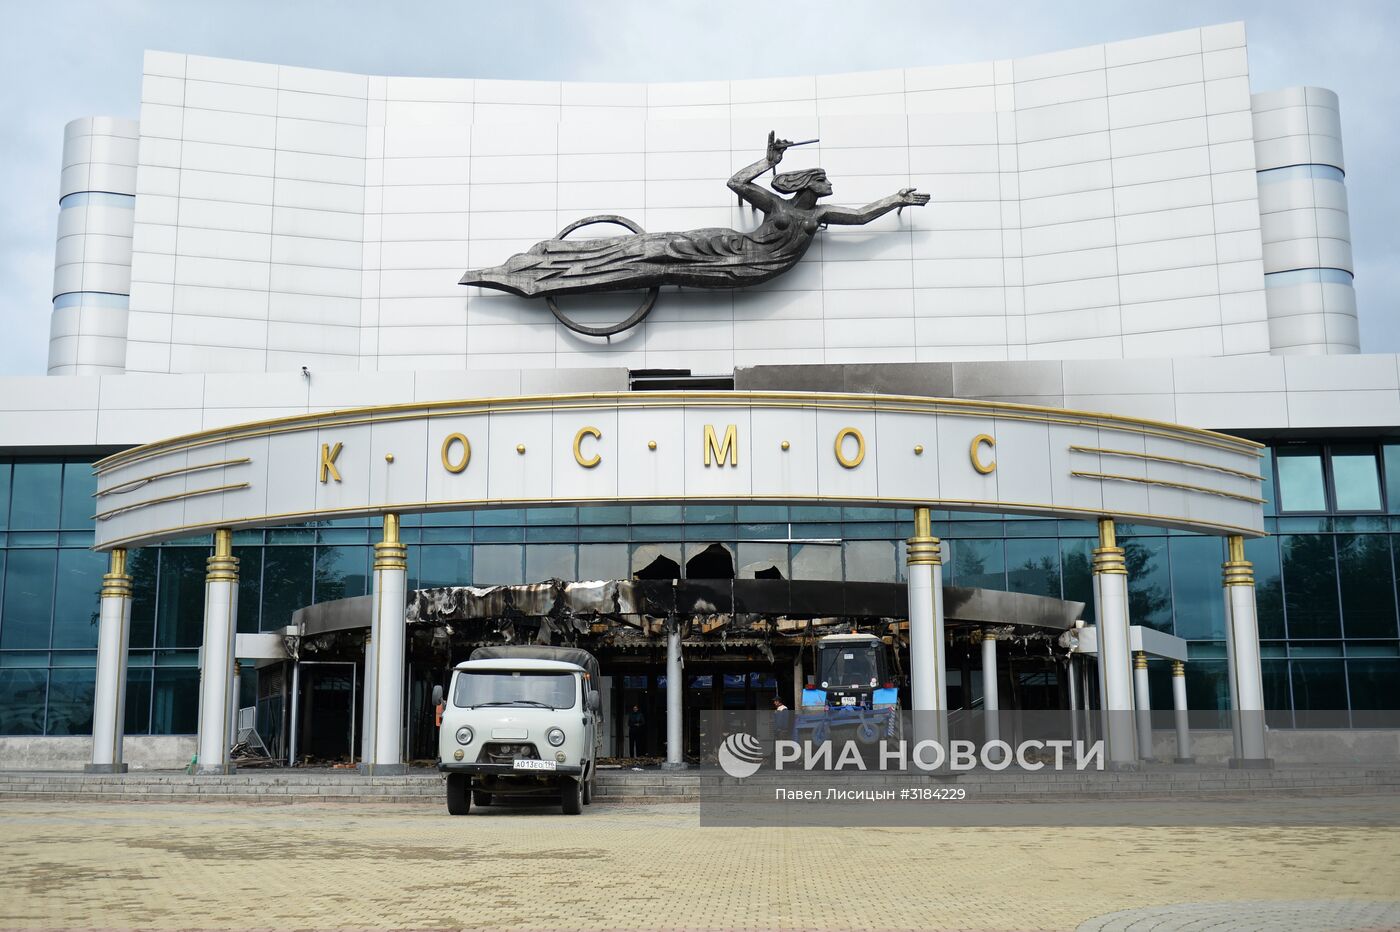 Последствия пожара в киноконцертном театре "Космос" в Екатеринбурге